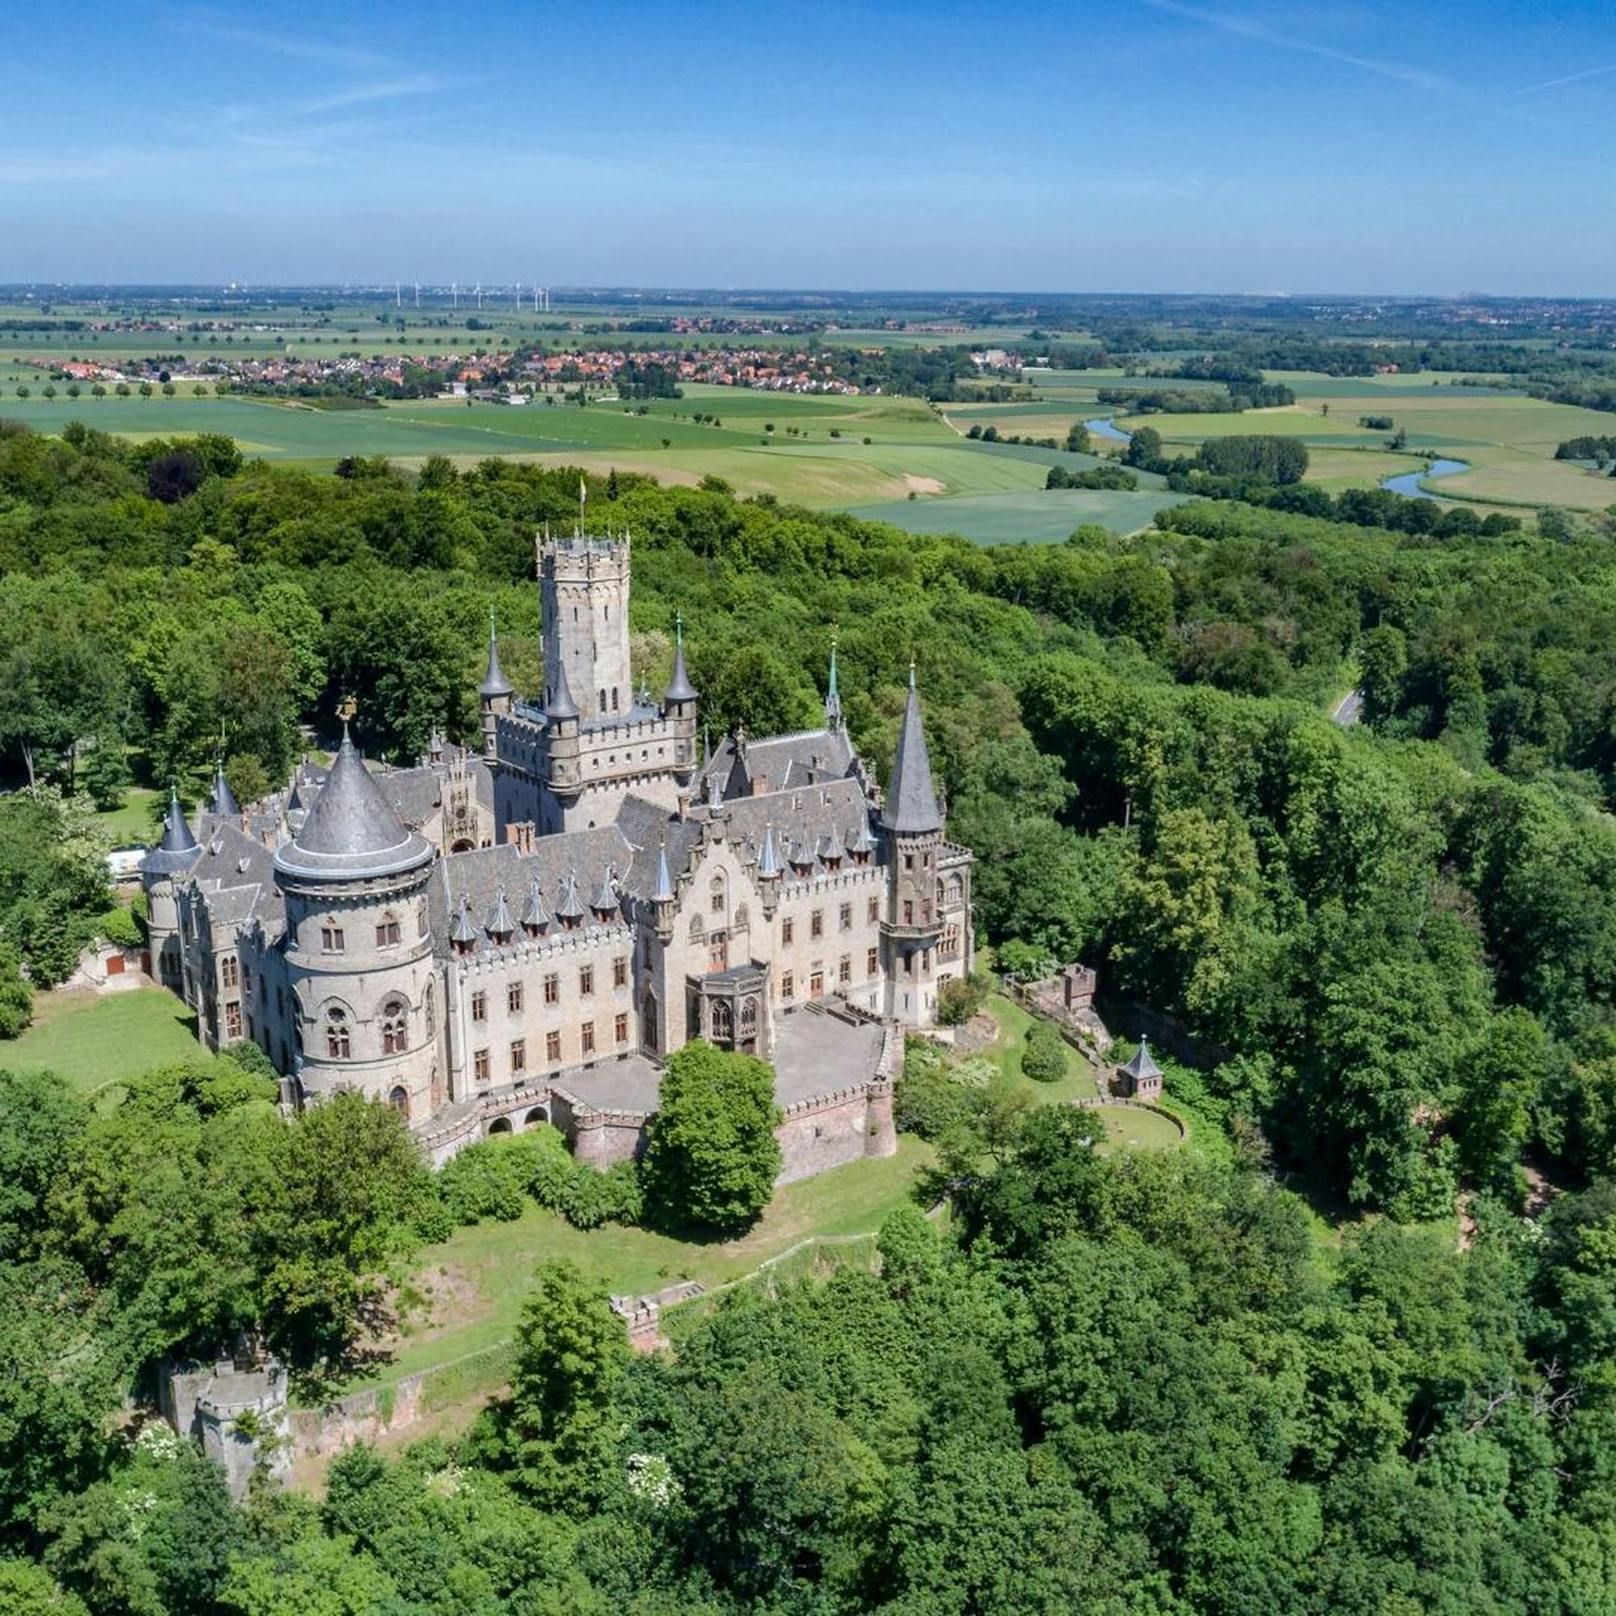 Das märchenhafte Schloss Marienburg in Pattensen (Region Hannover) ist Ziel einer Familienfehde zwischen Vater und Sohn.